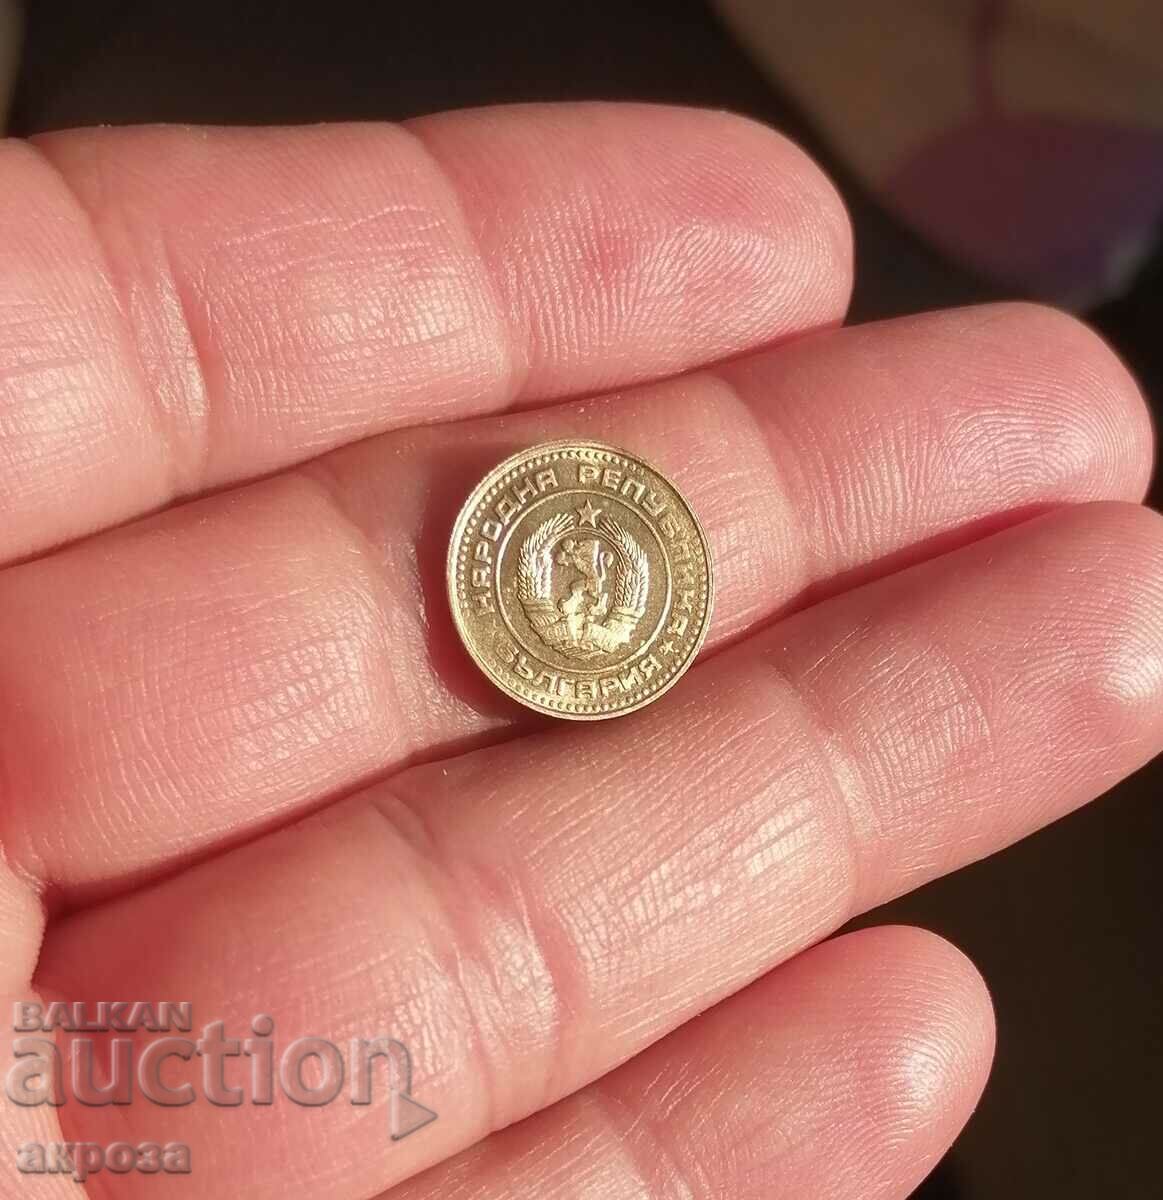 1 cent 1989 cu luciu